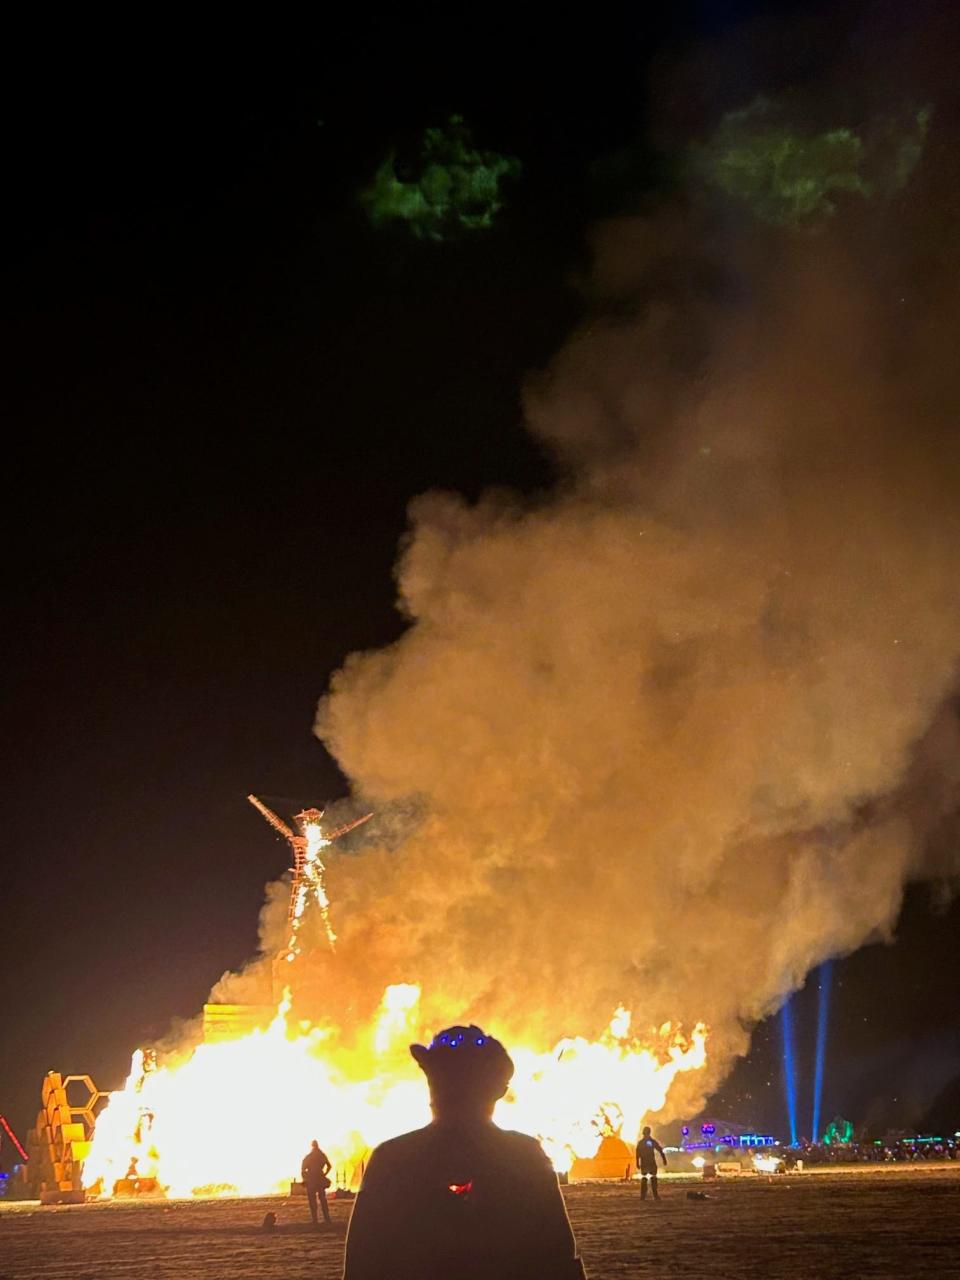 Burning the Man at Burning Man